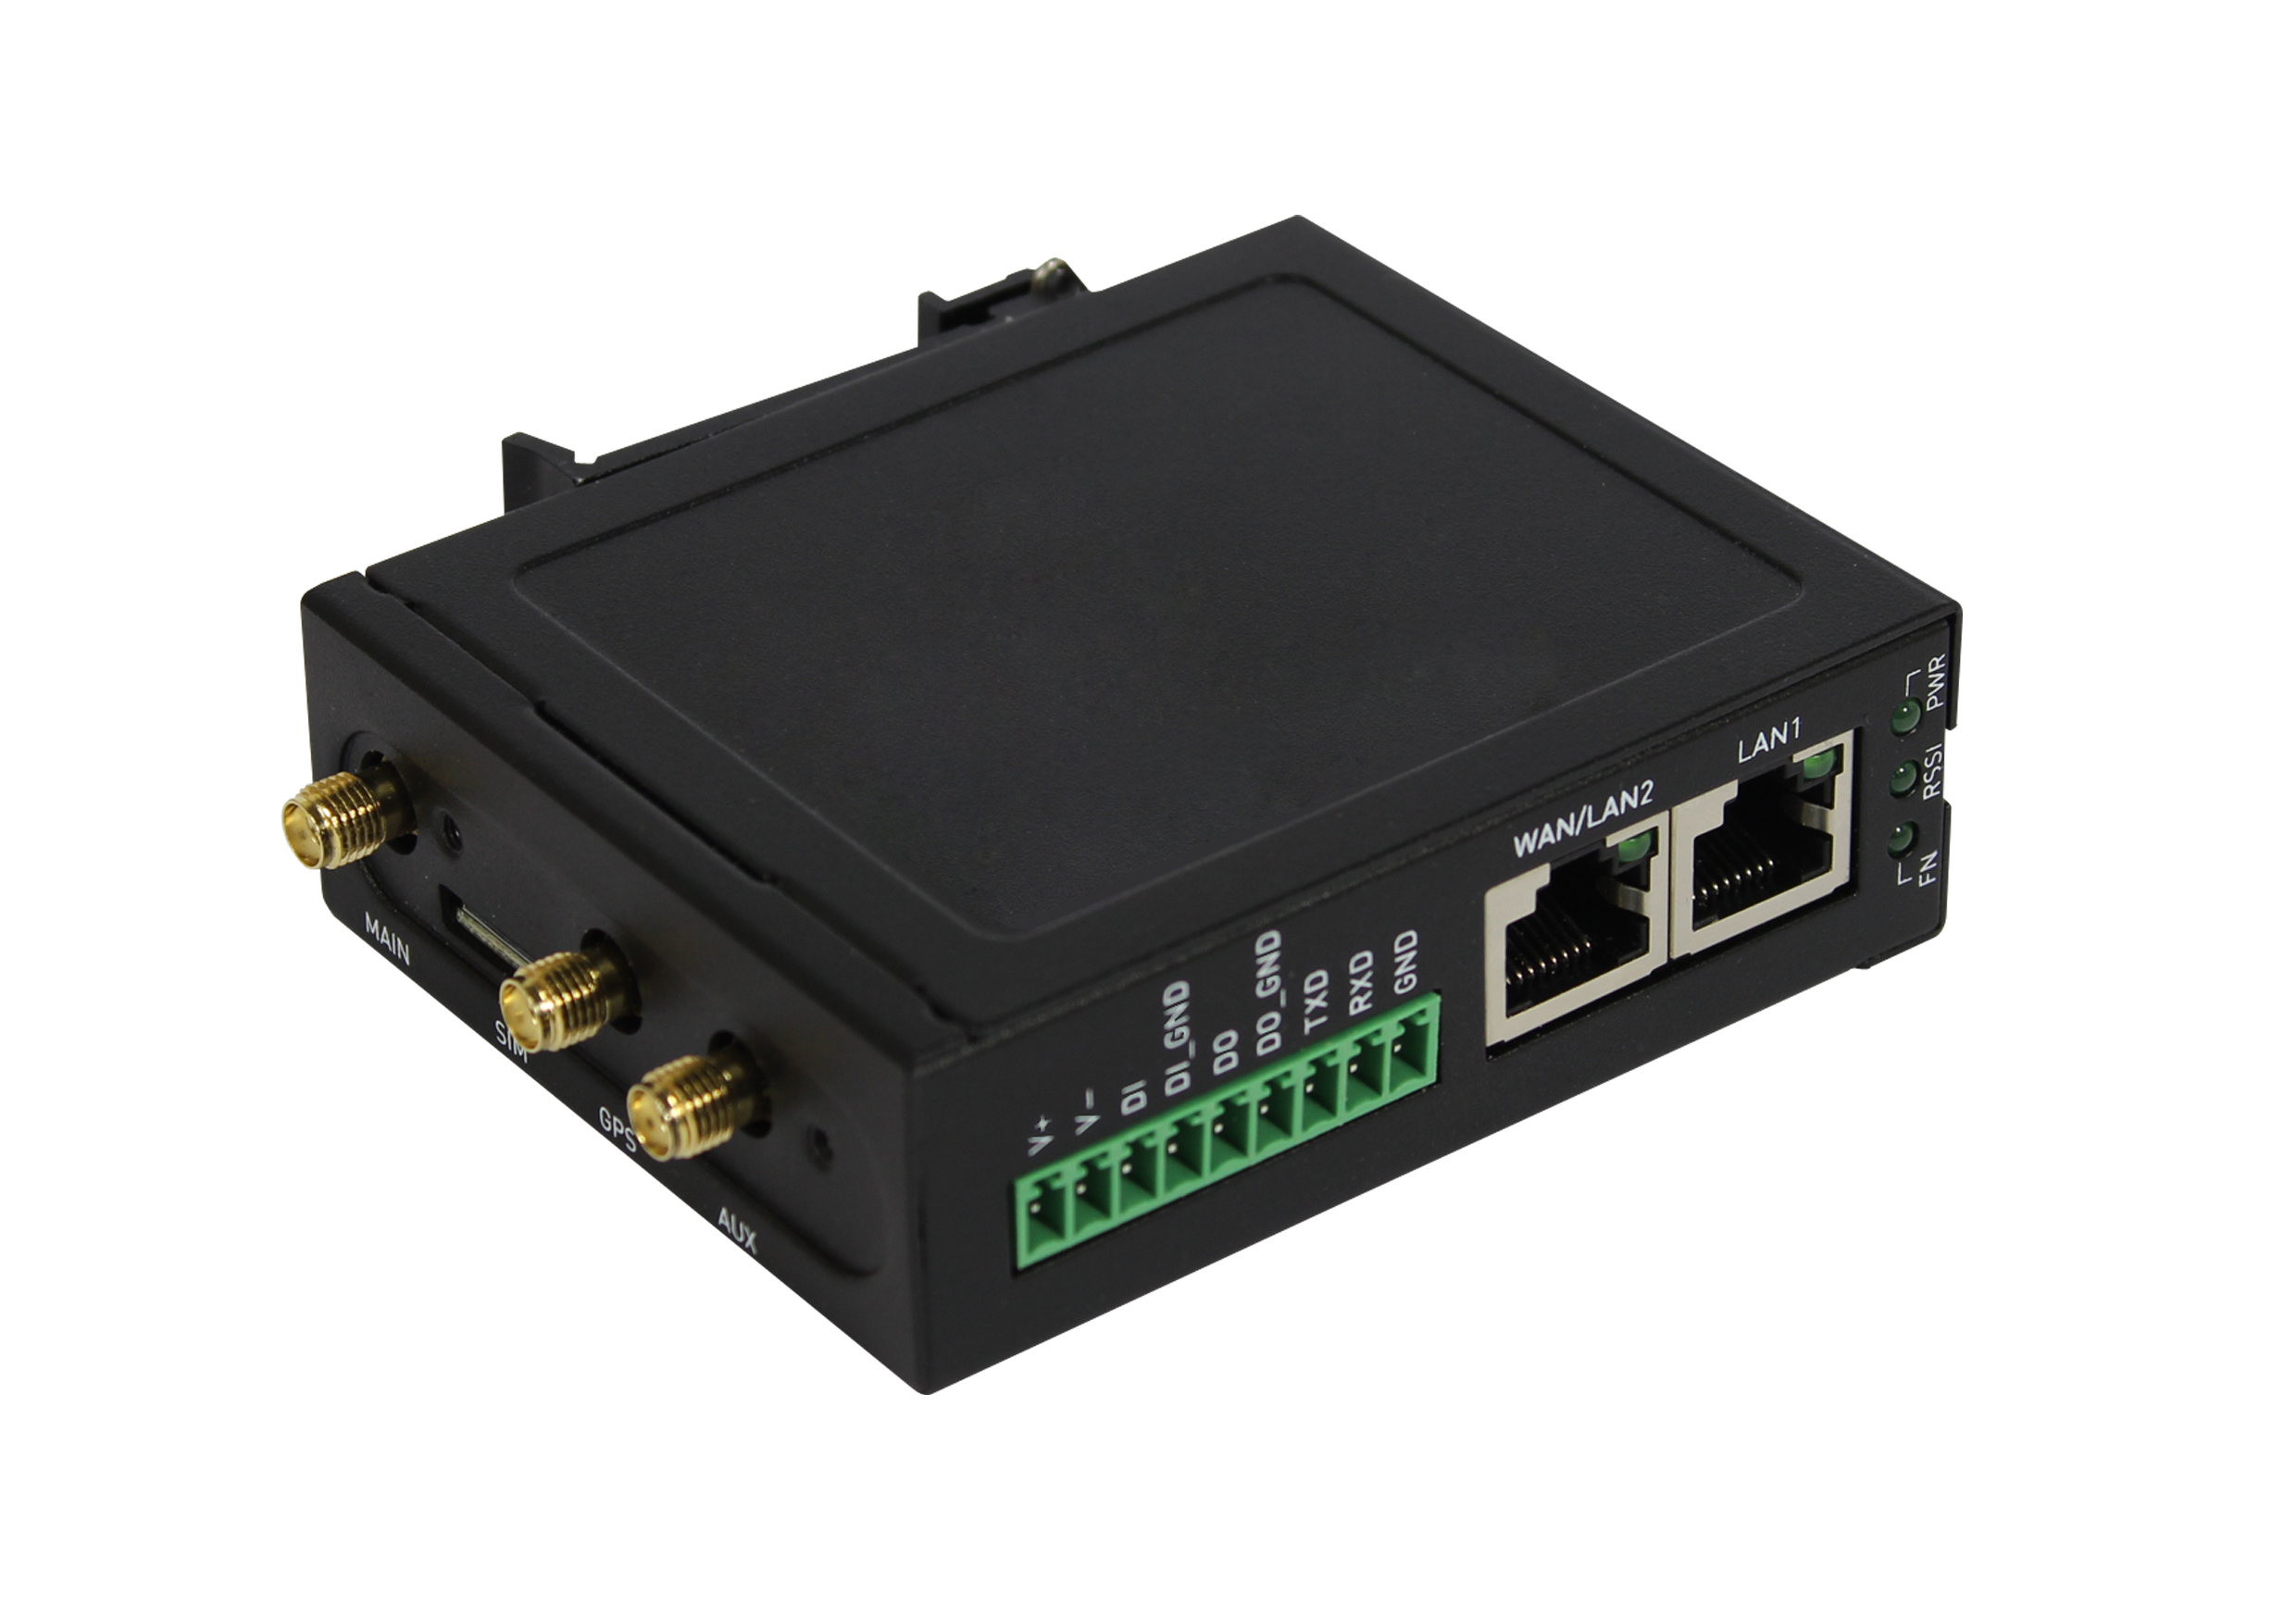 ALLNET 182958 - Eingebauter Ethernet-Anschluss - 3G - 4G - Schwarz - Tabletop-Router